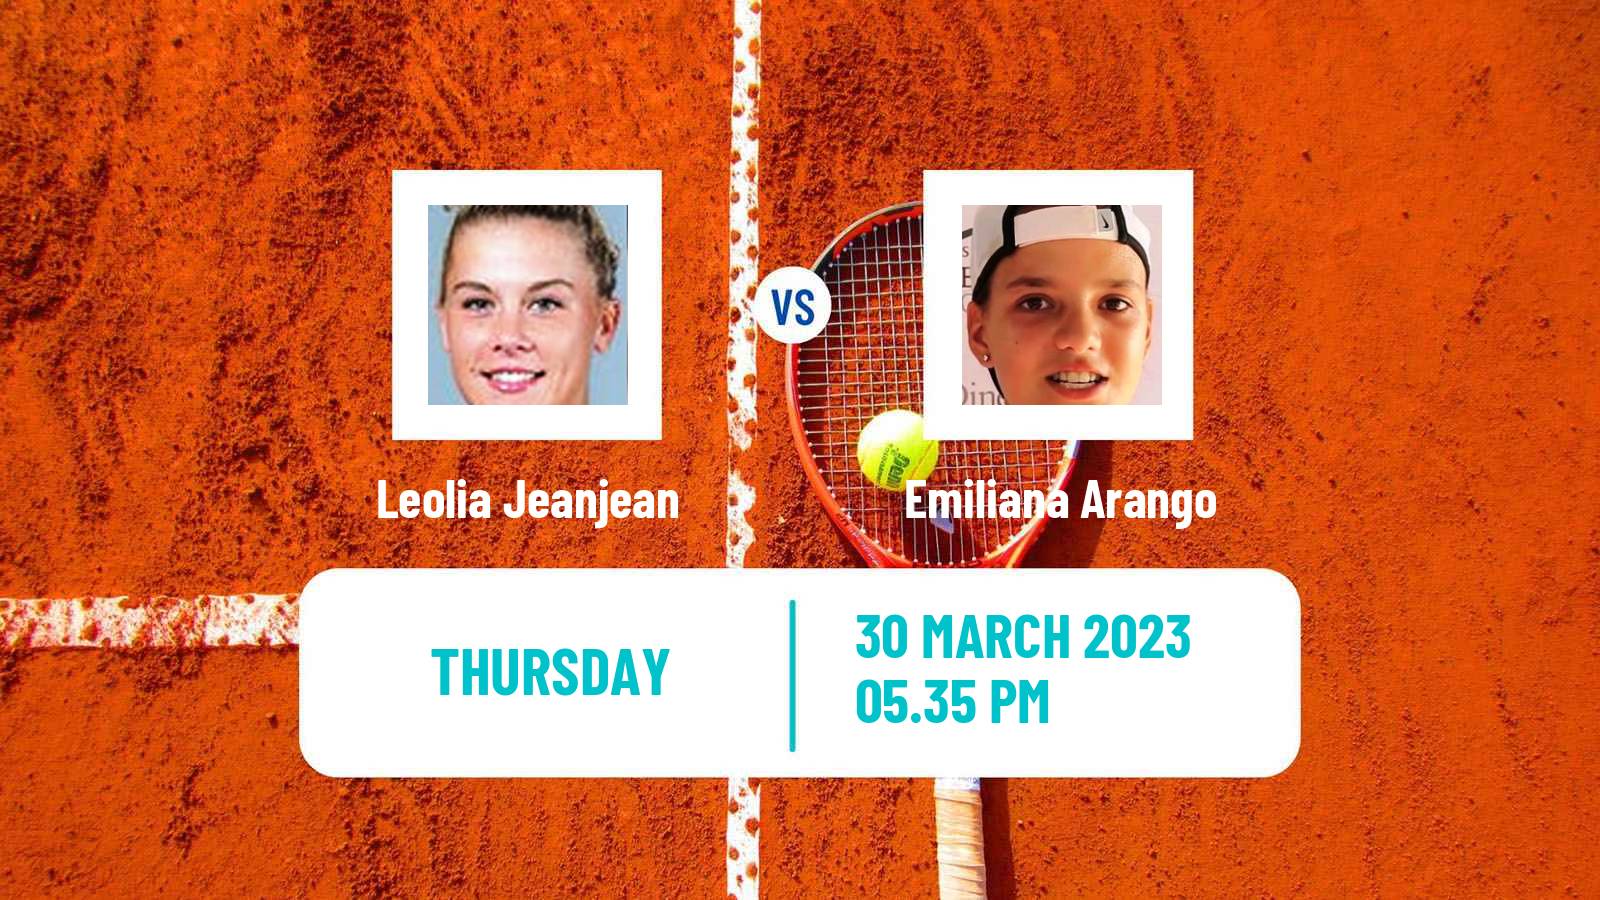 Tennis ATP Challenger Leolia Jeanjean - Emiliana Arango